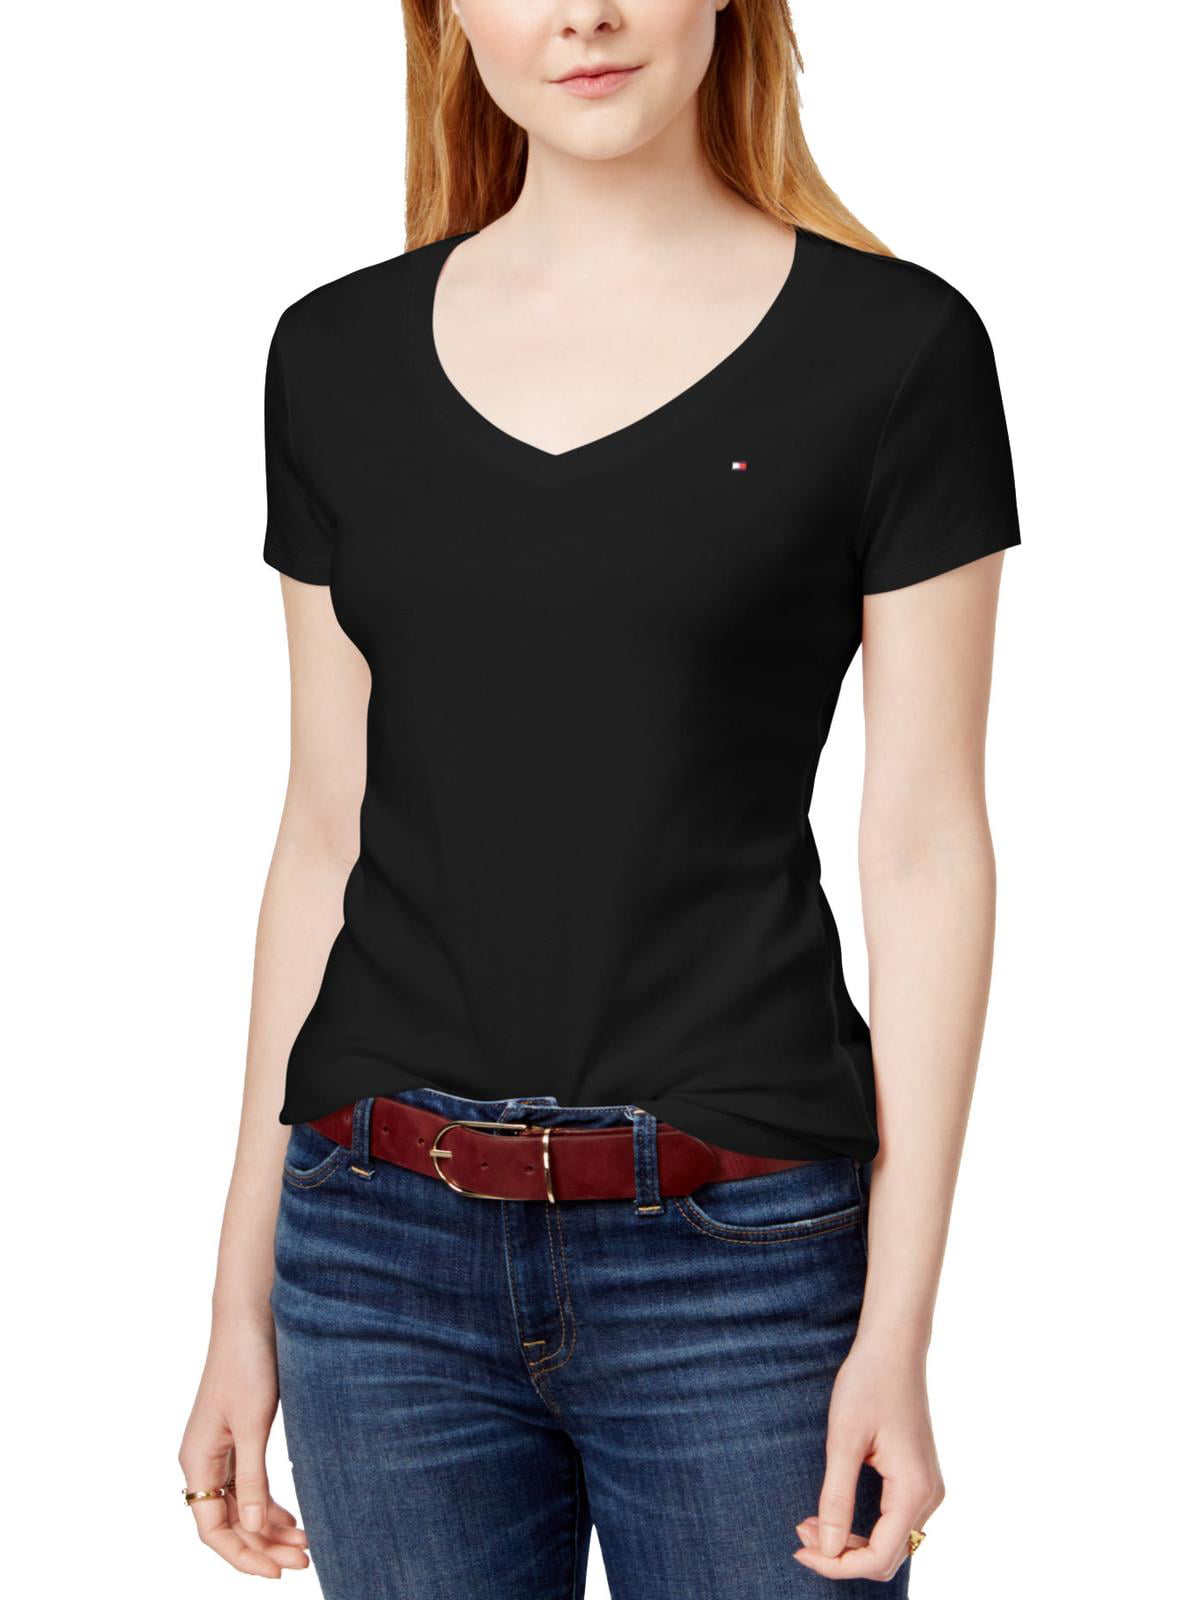 Forberedende navn Sinis ankomst Tommy Hilfiger Womens Logo V-Neck T-Shirt Black XL - Walmart.com